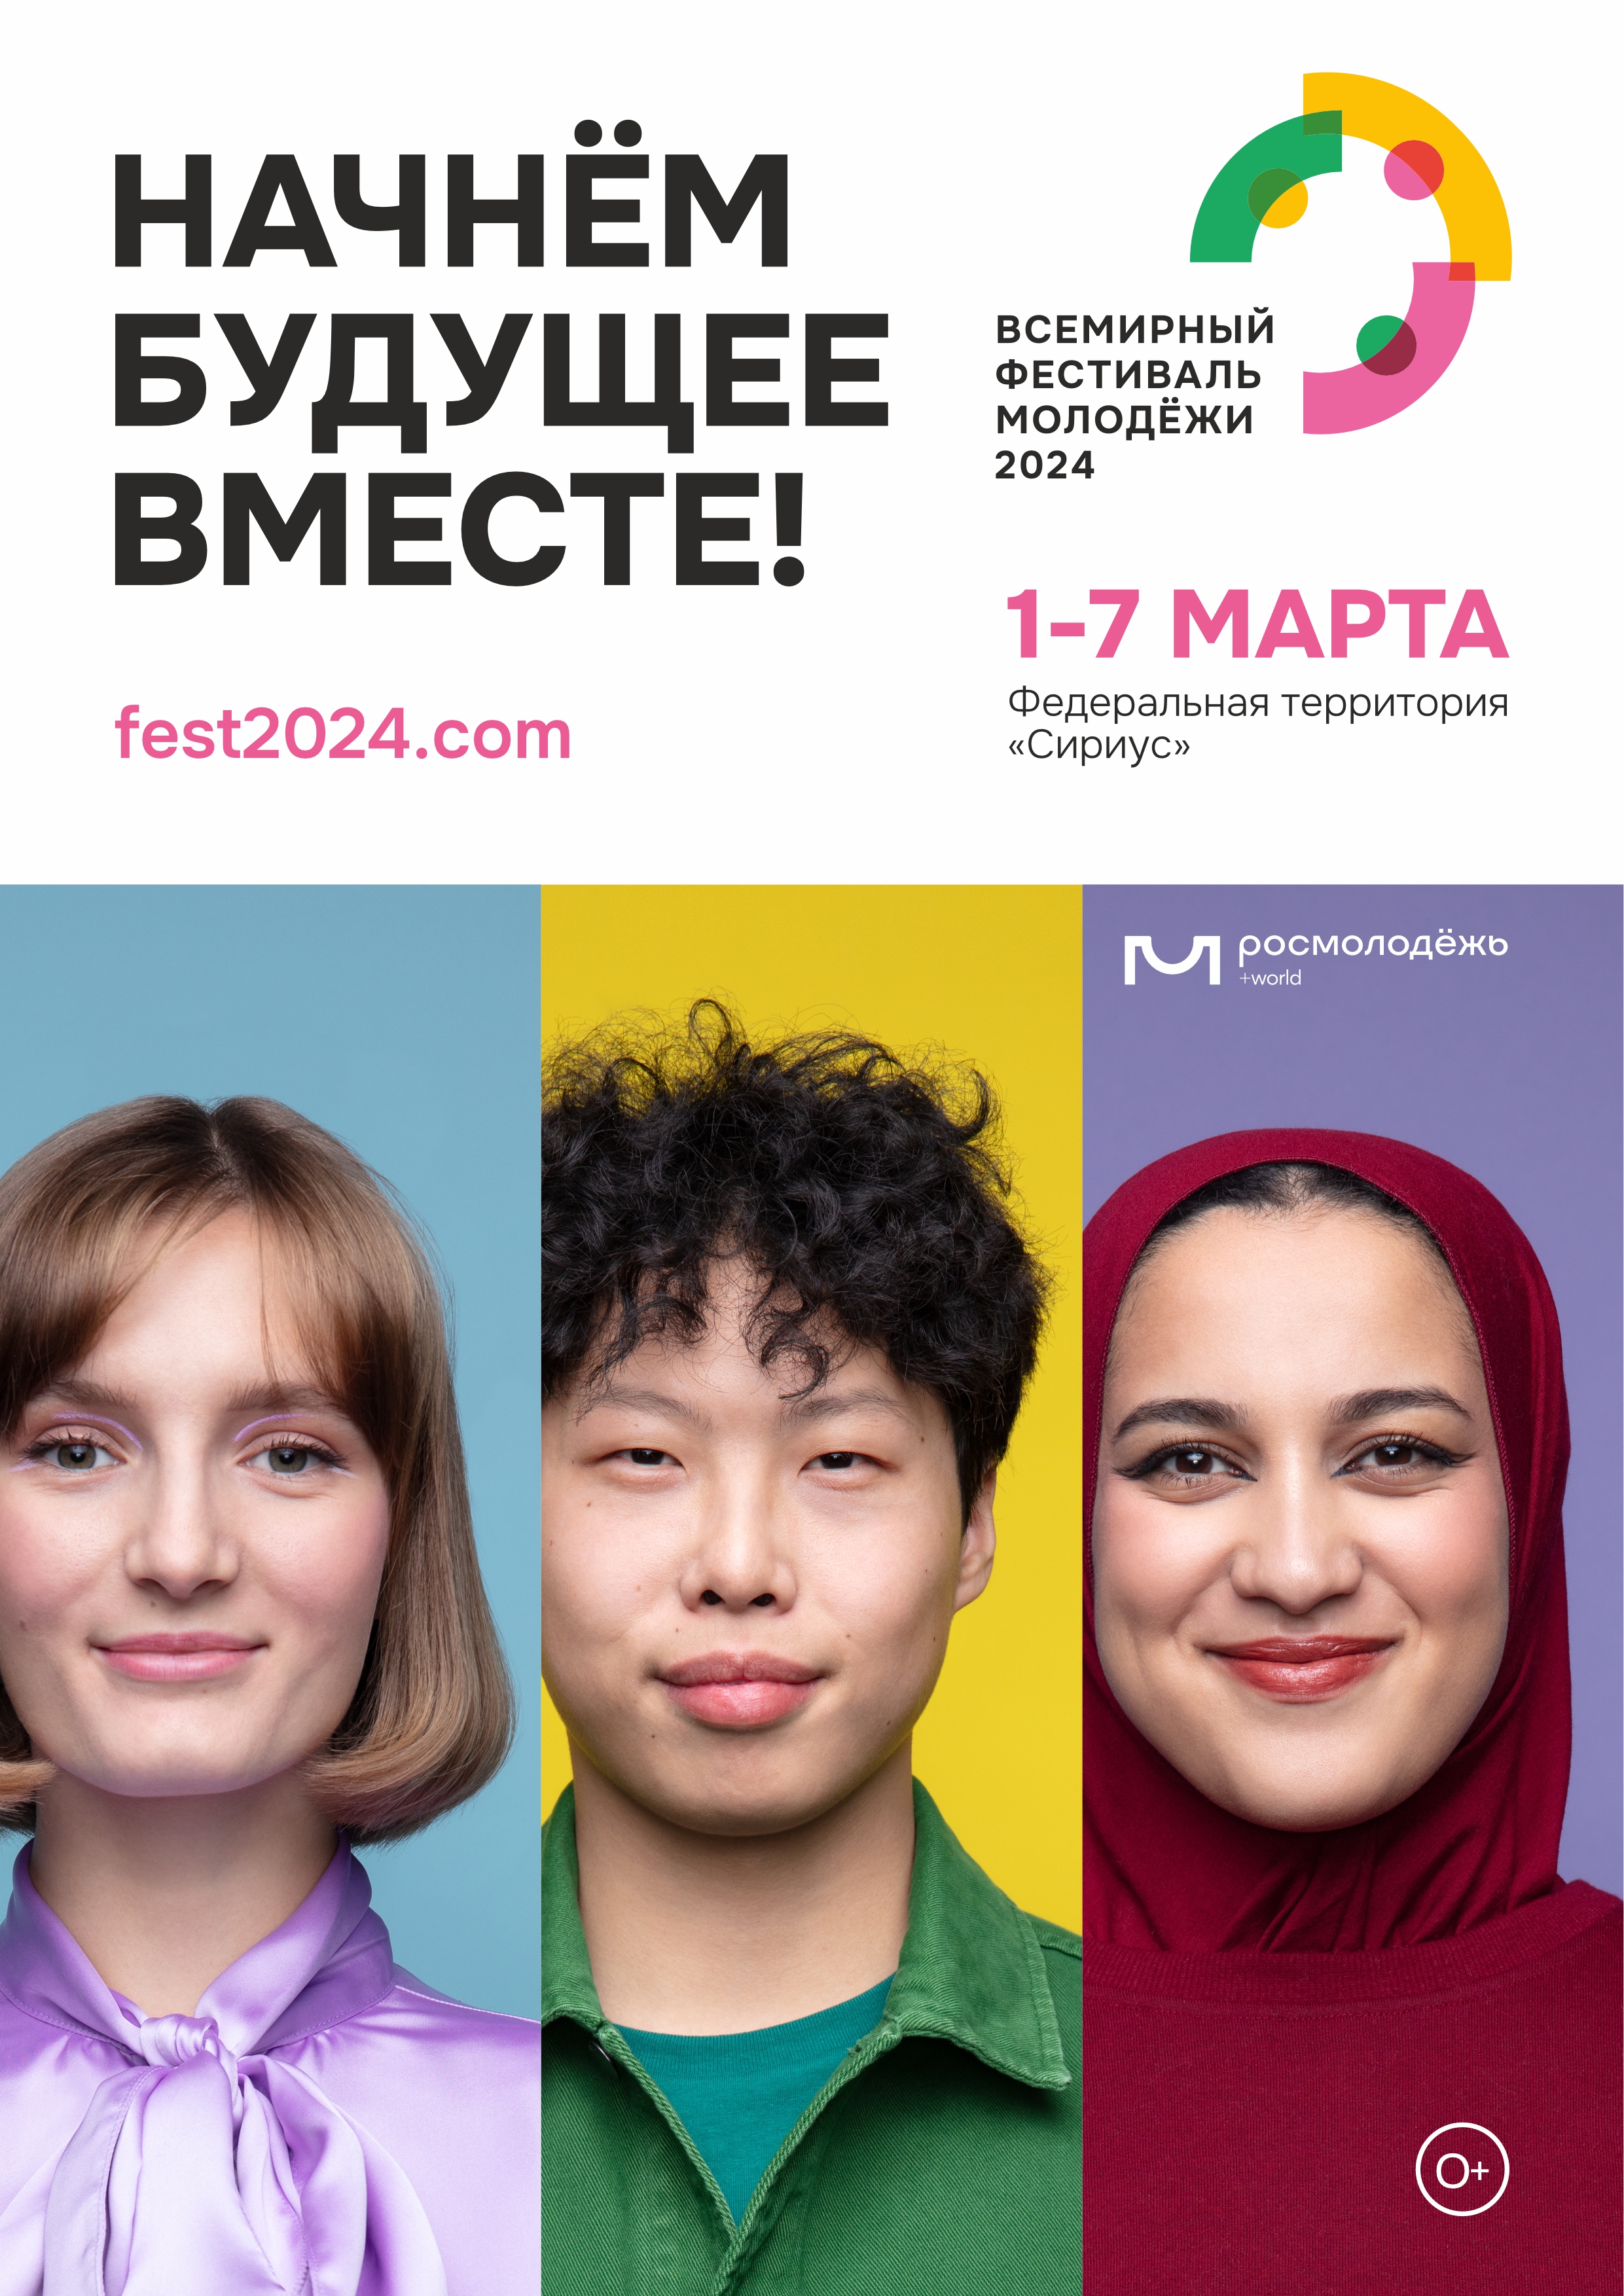 Всемирный фестиваль молодежи, согласно Указу Президента Российской Федерации, пройдет в Сириусе 1-7 марта 2024 года.